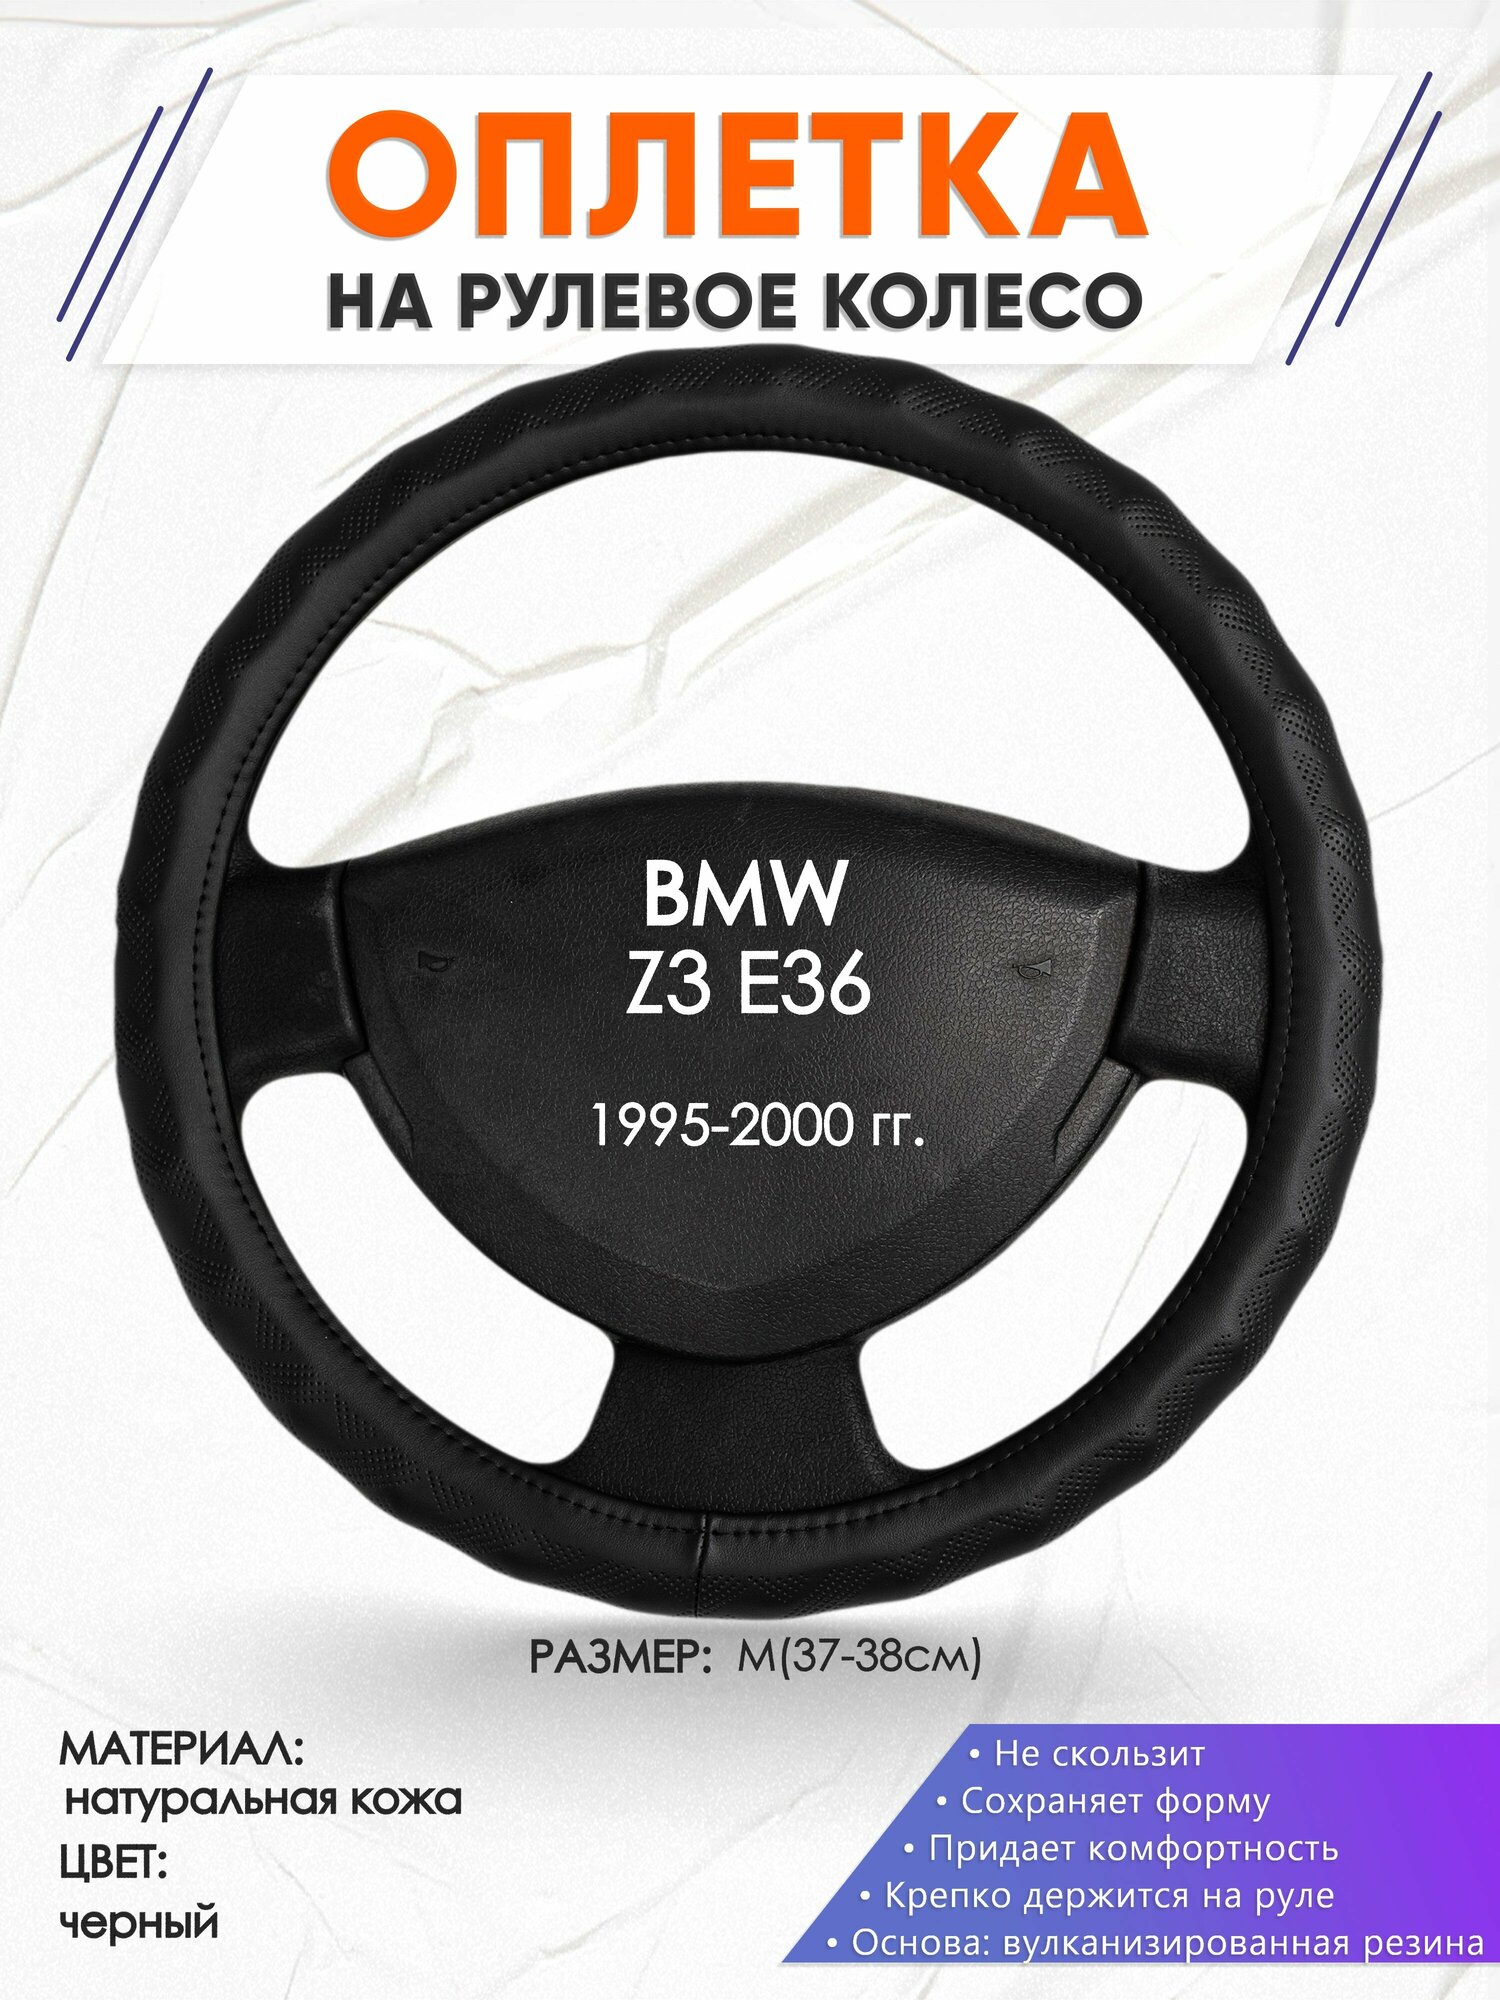 Оплетка наруль для BMW Z3 E36(Бмв зет 3 Е36) 1995-2000 годов выпуска, размер M(37-38см), Натуральная кожа 26